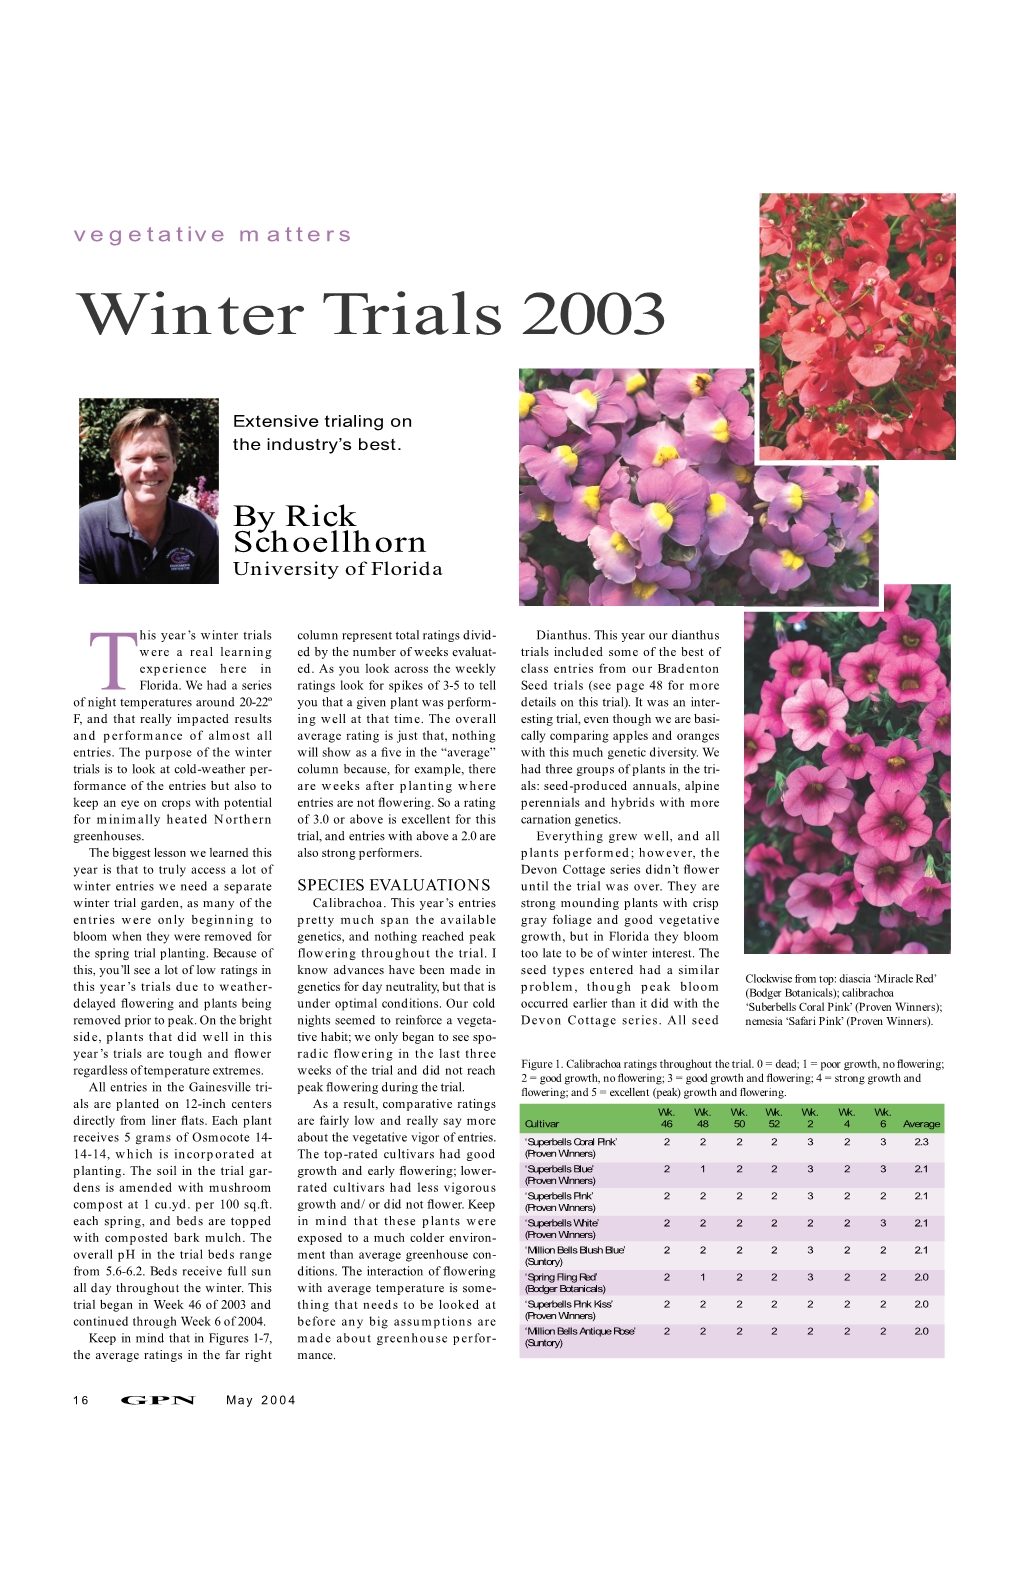 2003 Winter Trials